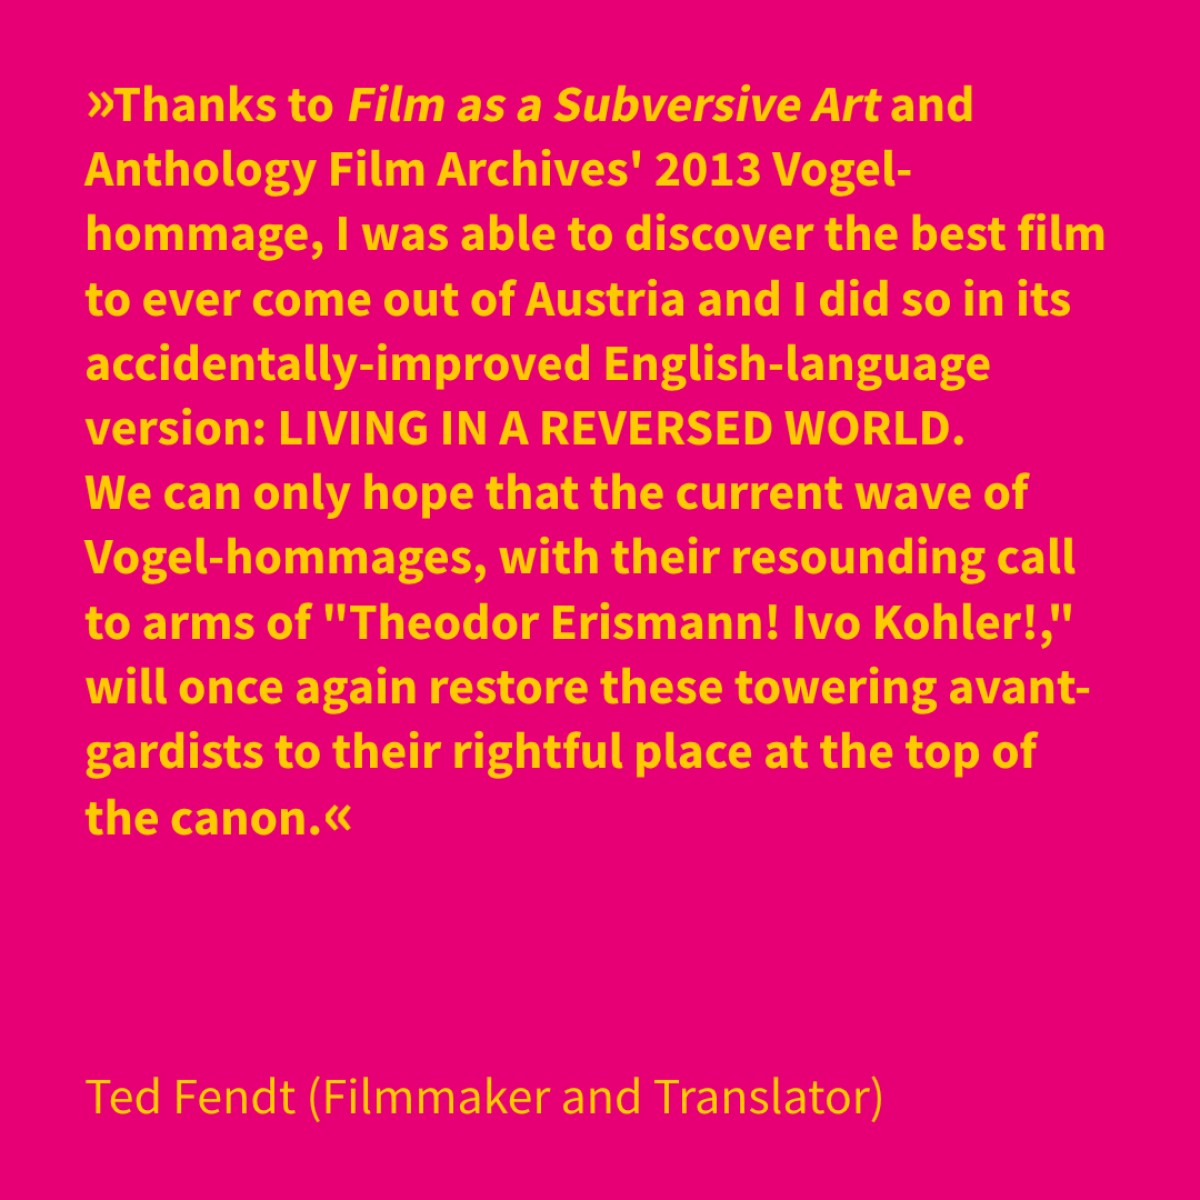 Ted Fendt (Filmmaker and Translator)